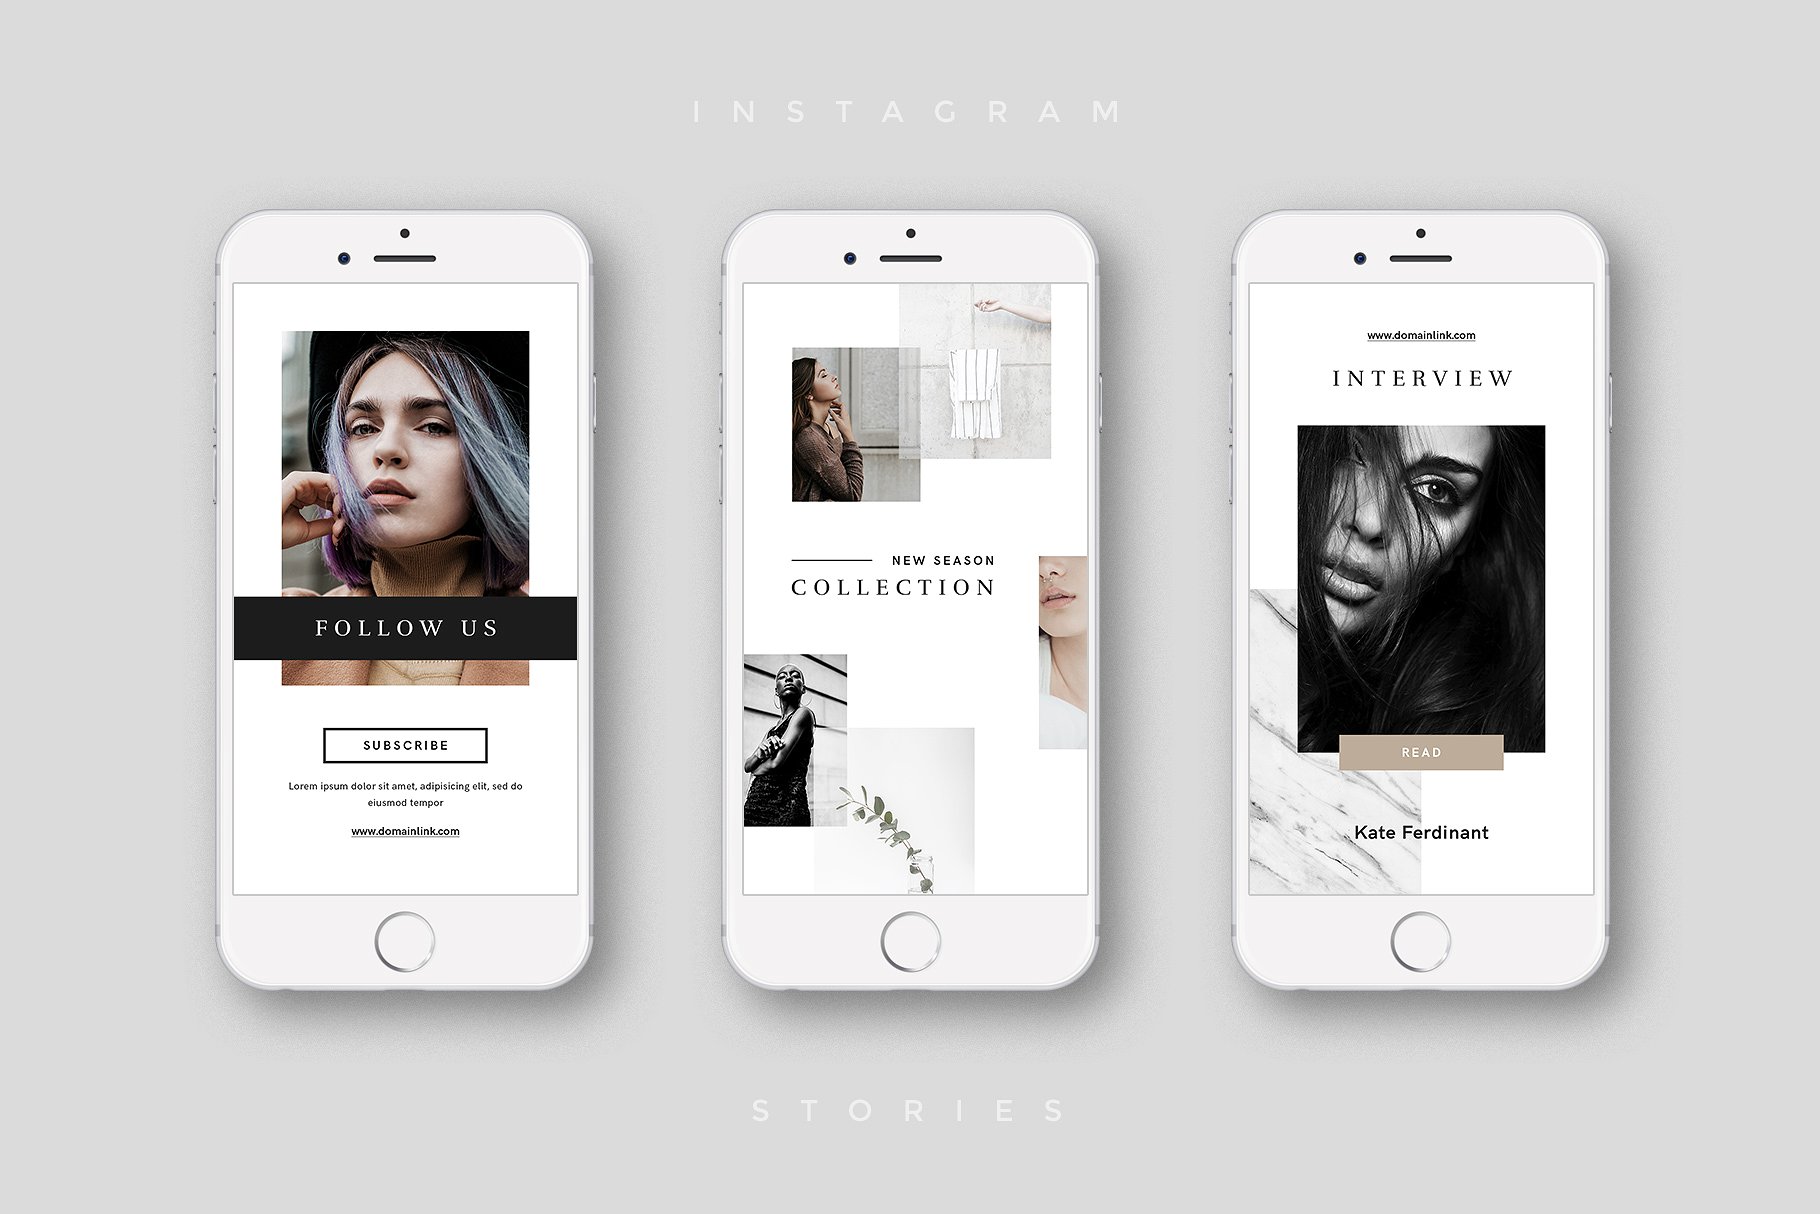 奢侈品电商社交媒体Ins故事贴图模板蚂蚁素材精选 Luxury Instagram Stories Pack插图(6)